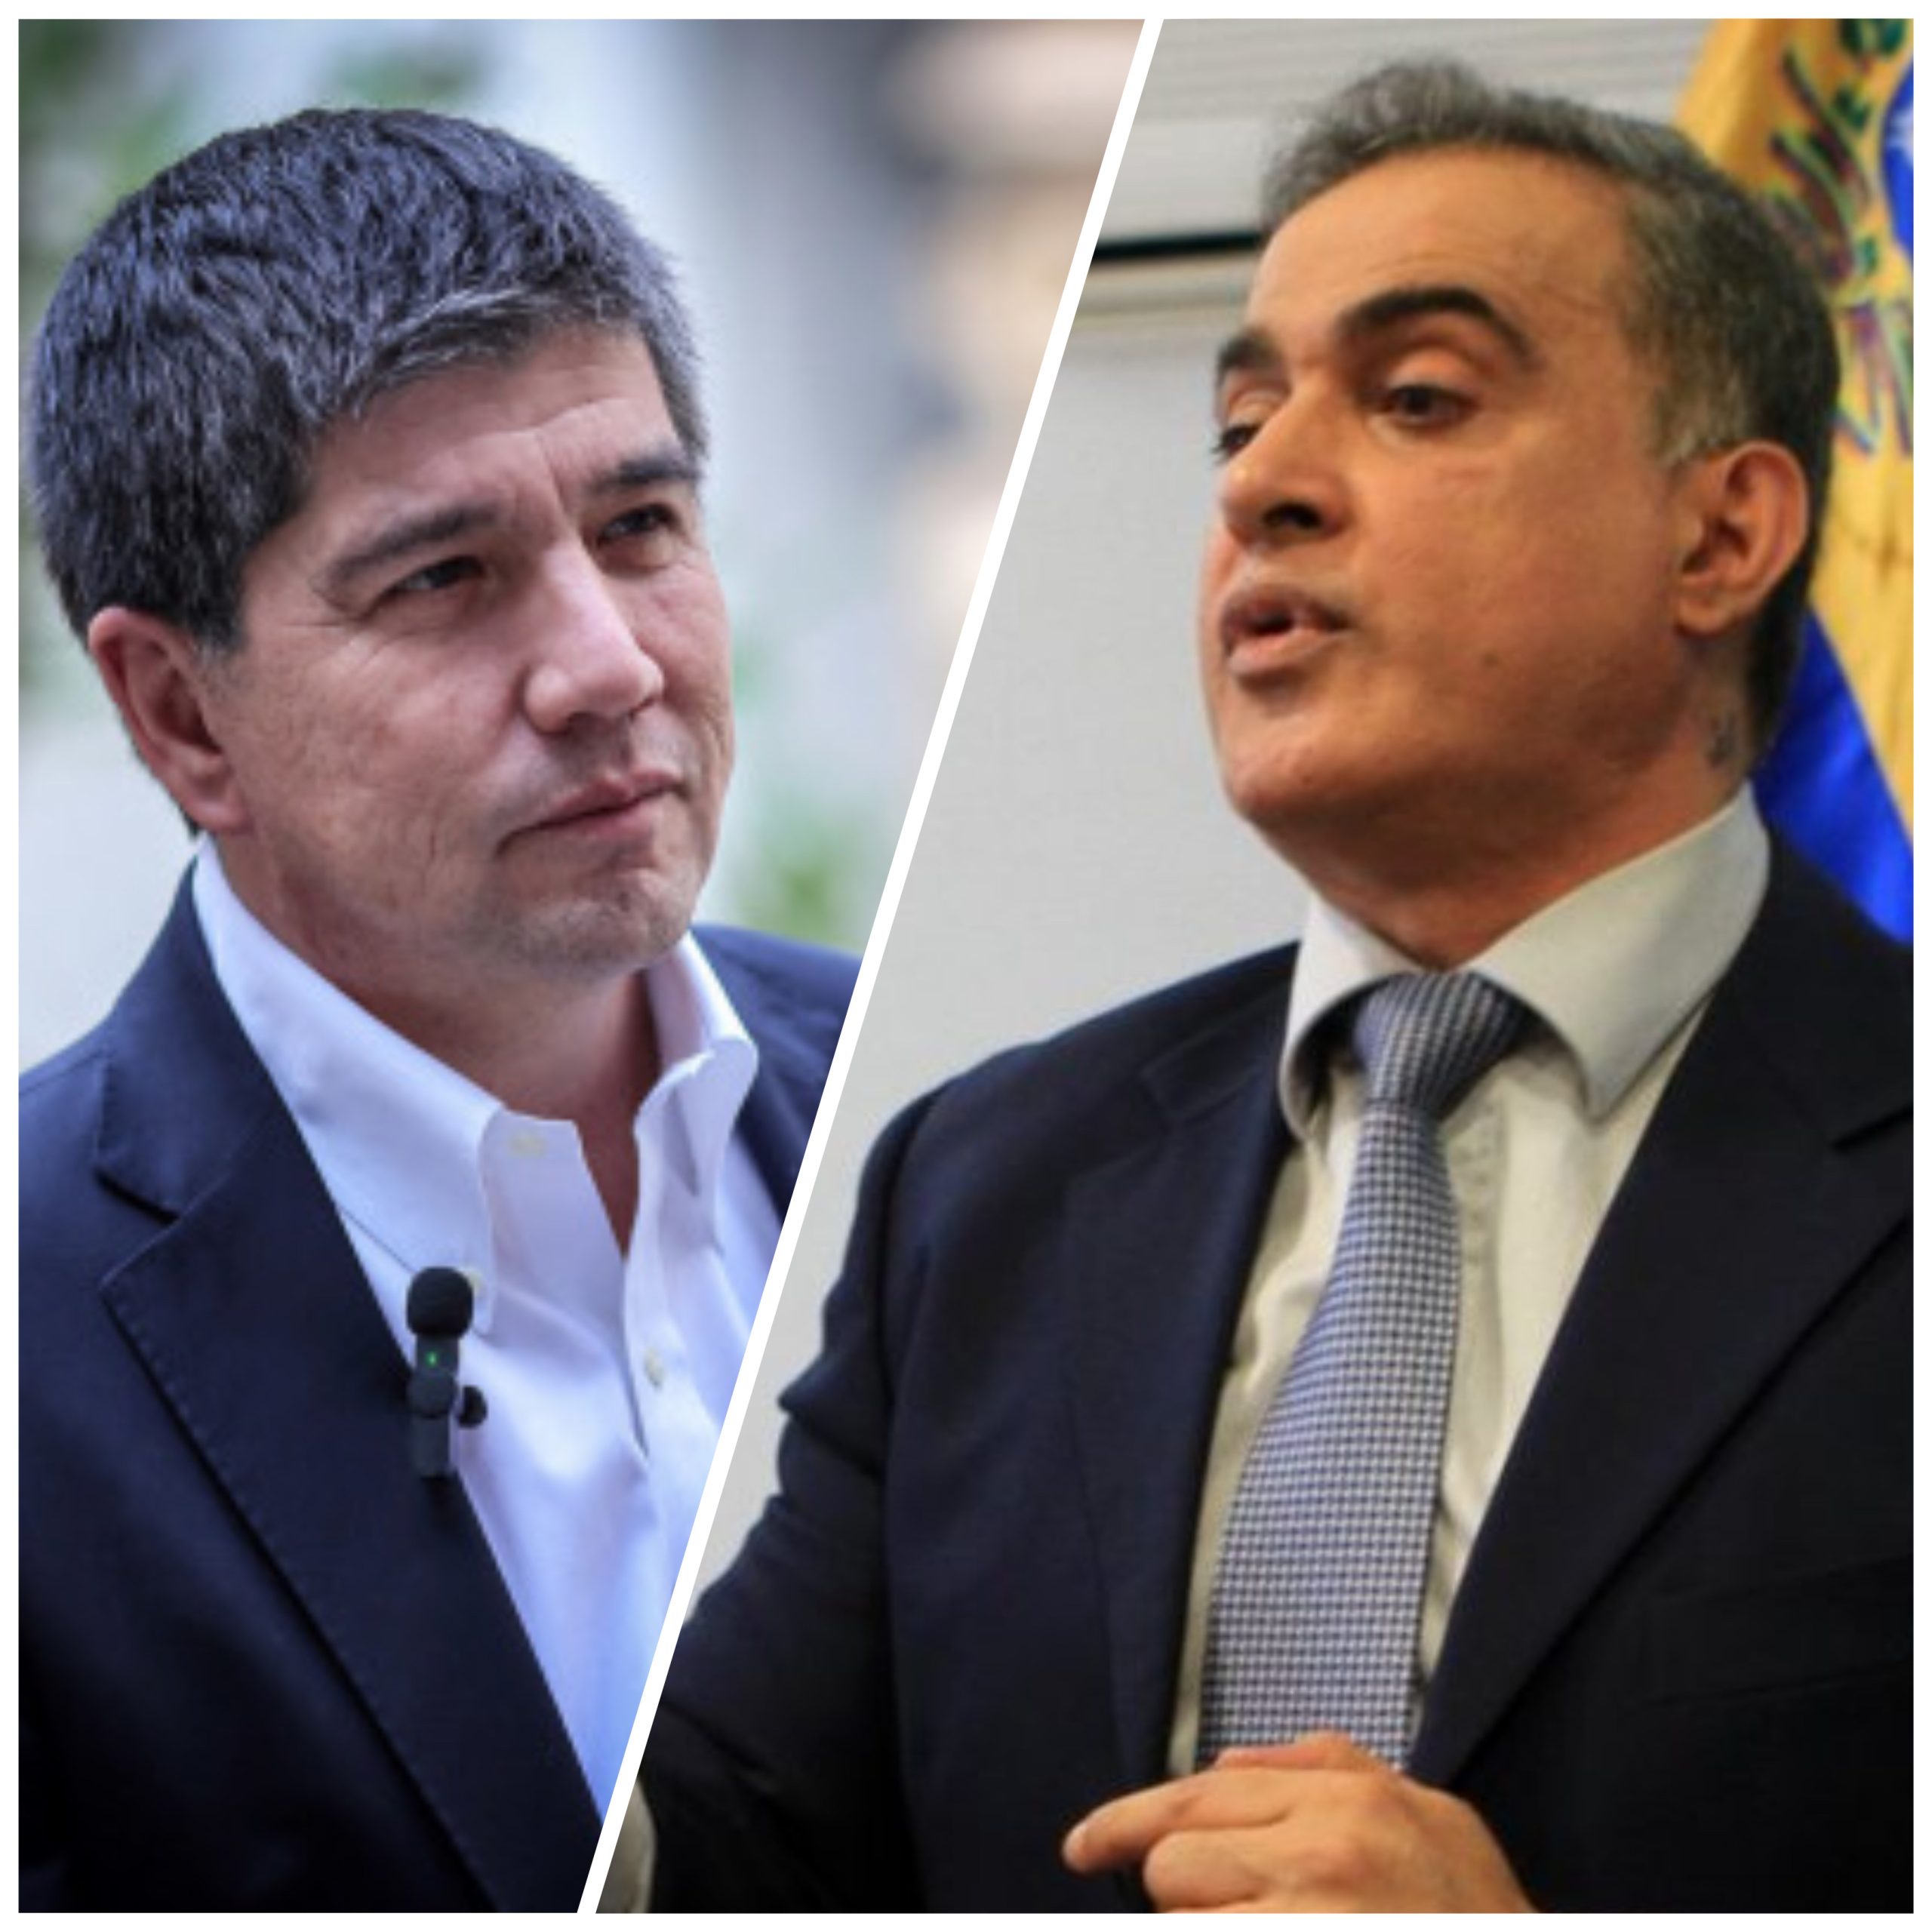 Subsecretario Monsalve responde a acusaciones de fiscal venezolano: “En Chile no toleramos la xenofobia”